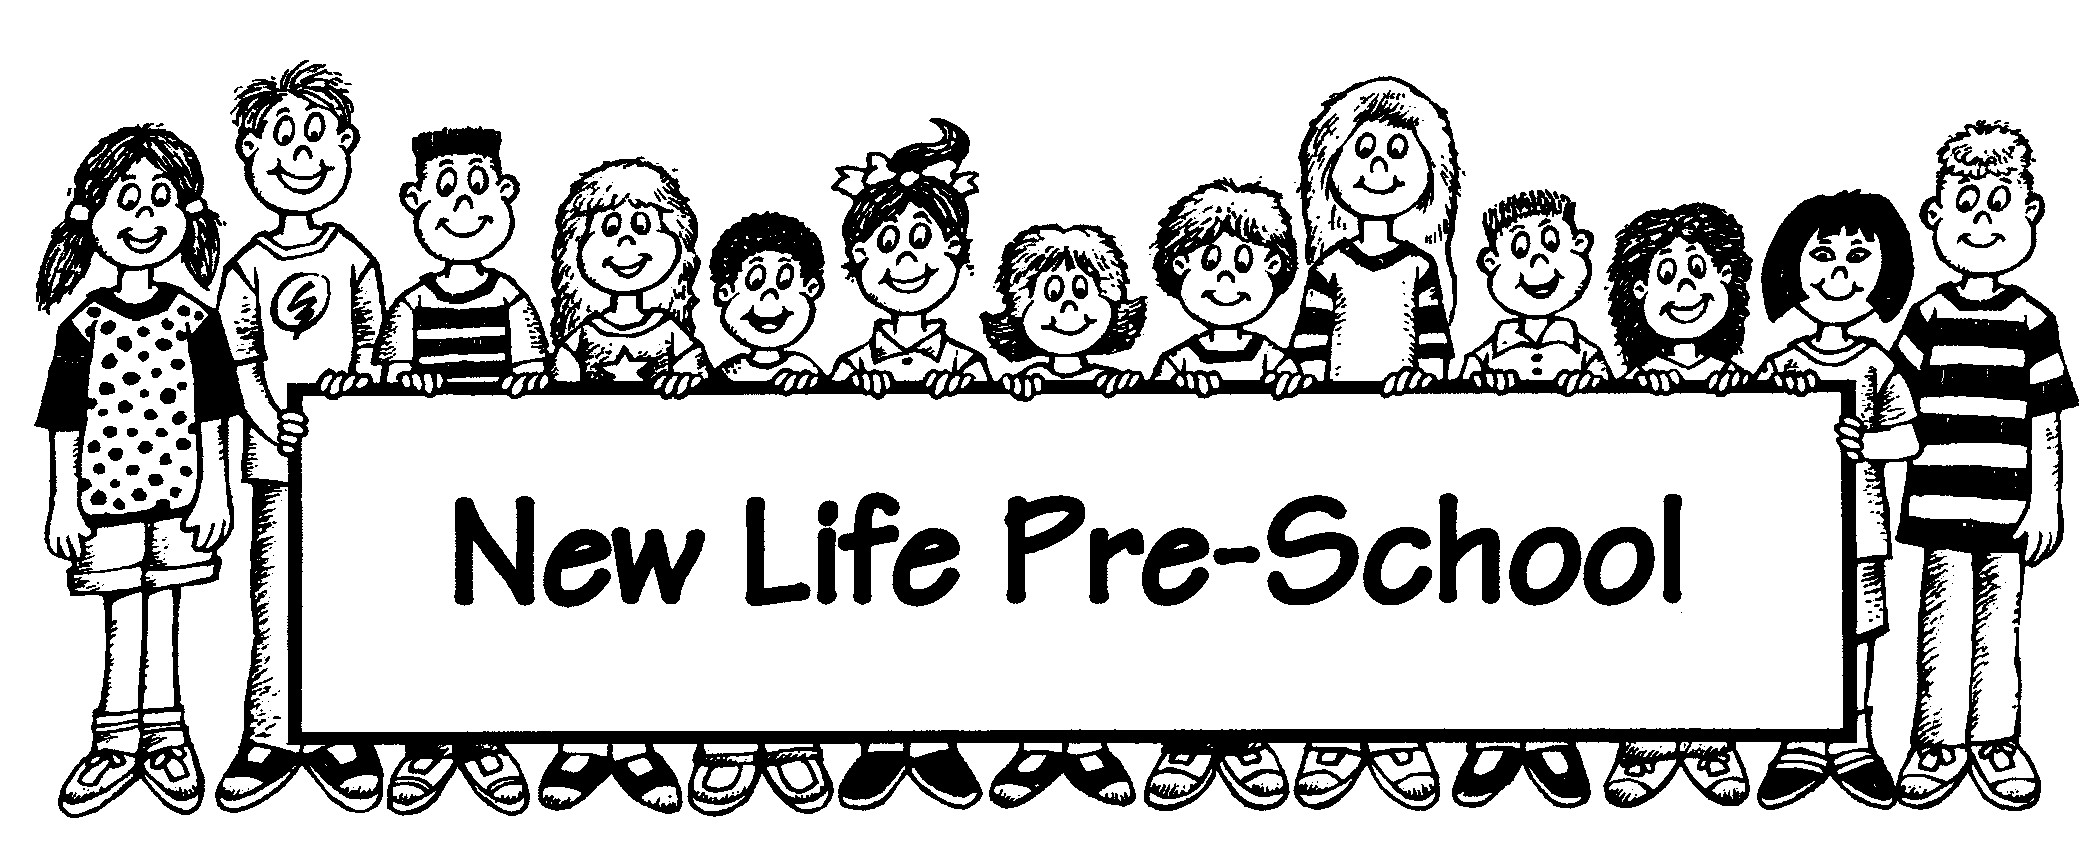 NEW LIFE PRESCHOOL & KINDERGARTEN